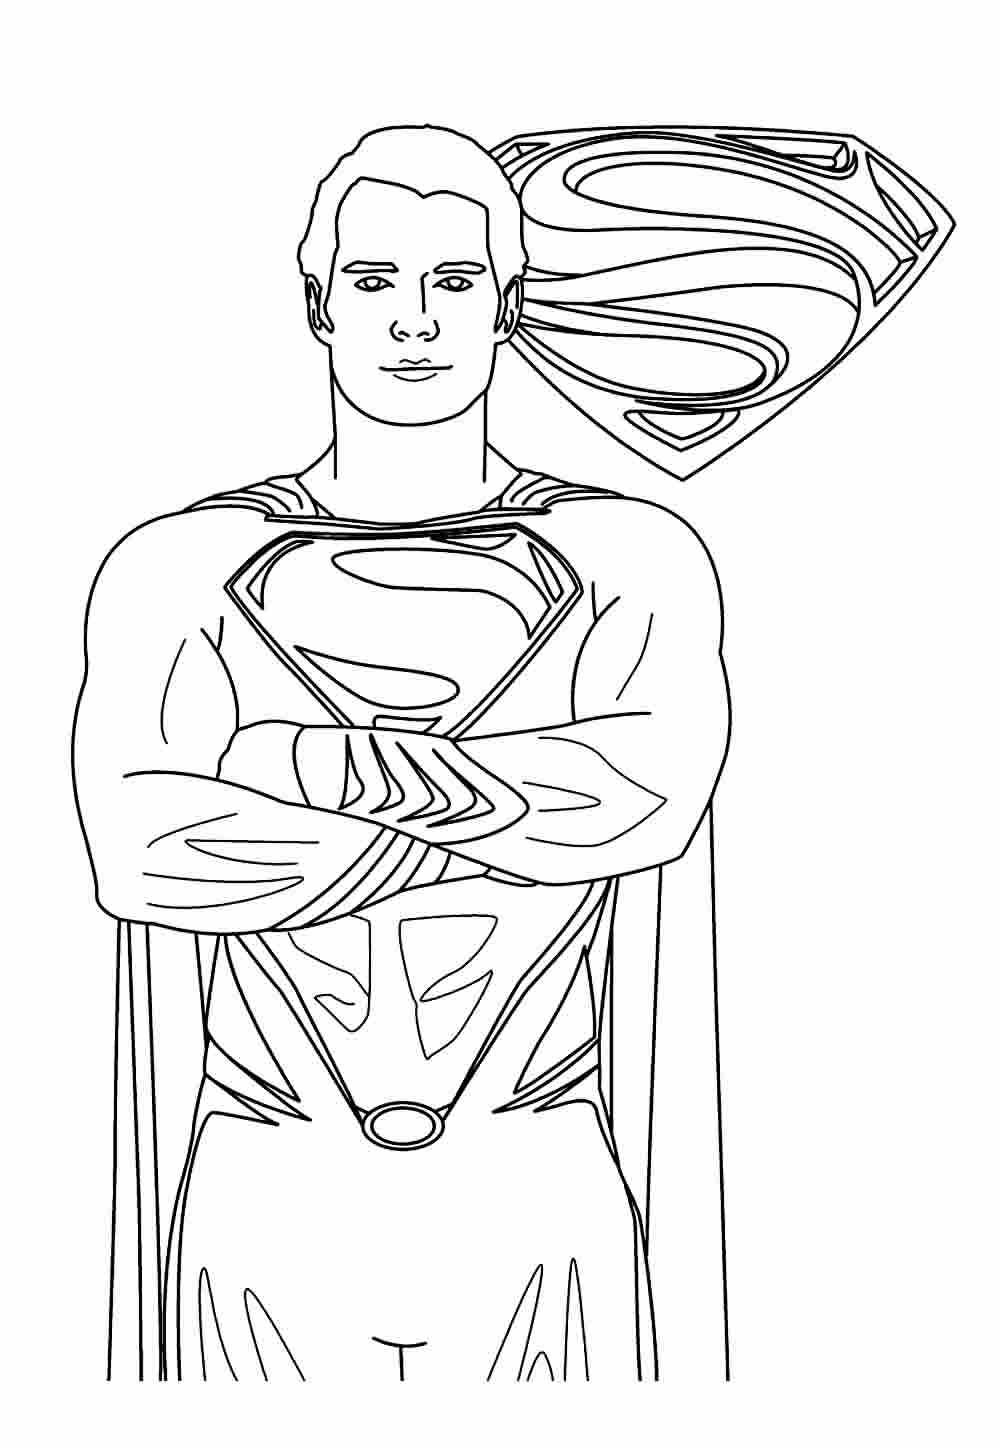 Desenho para pintar do Super-Homem